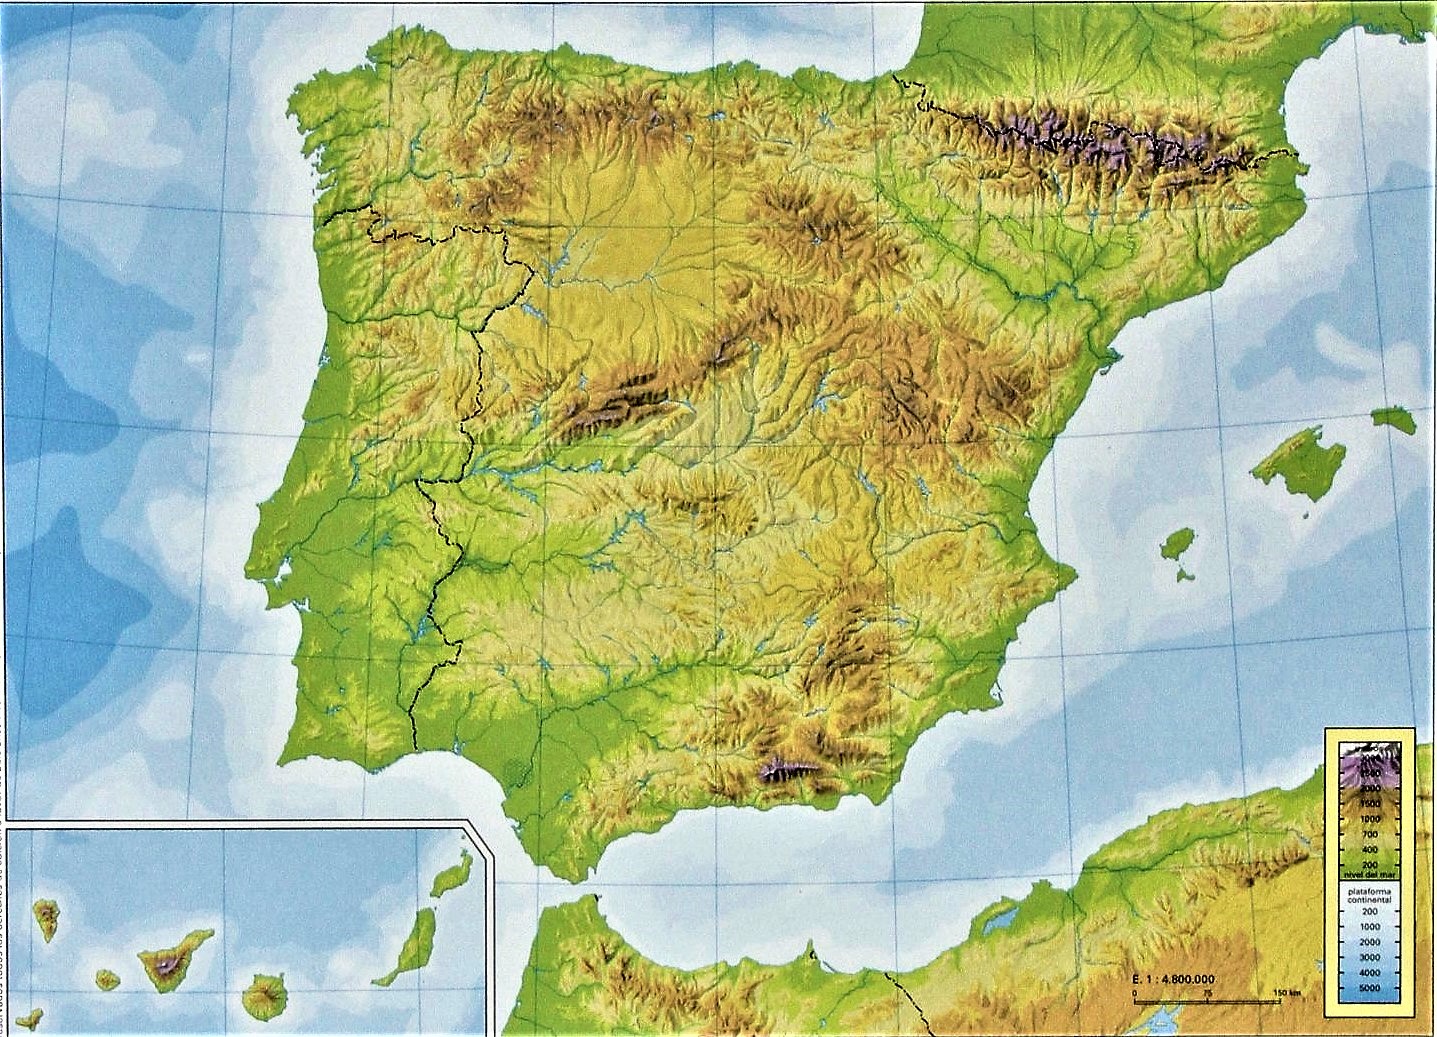 Juegos De Geografía Juego De Mapa Físico De España 5 Cerebriti 8014